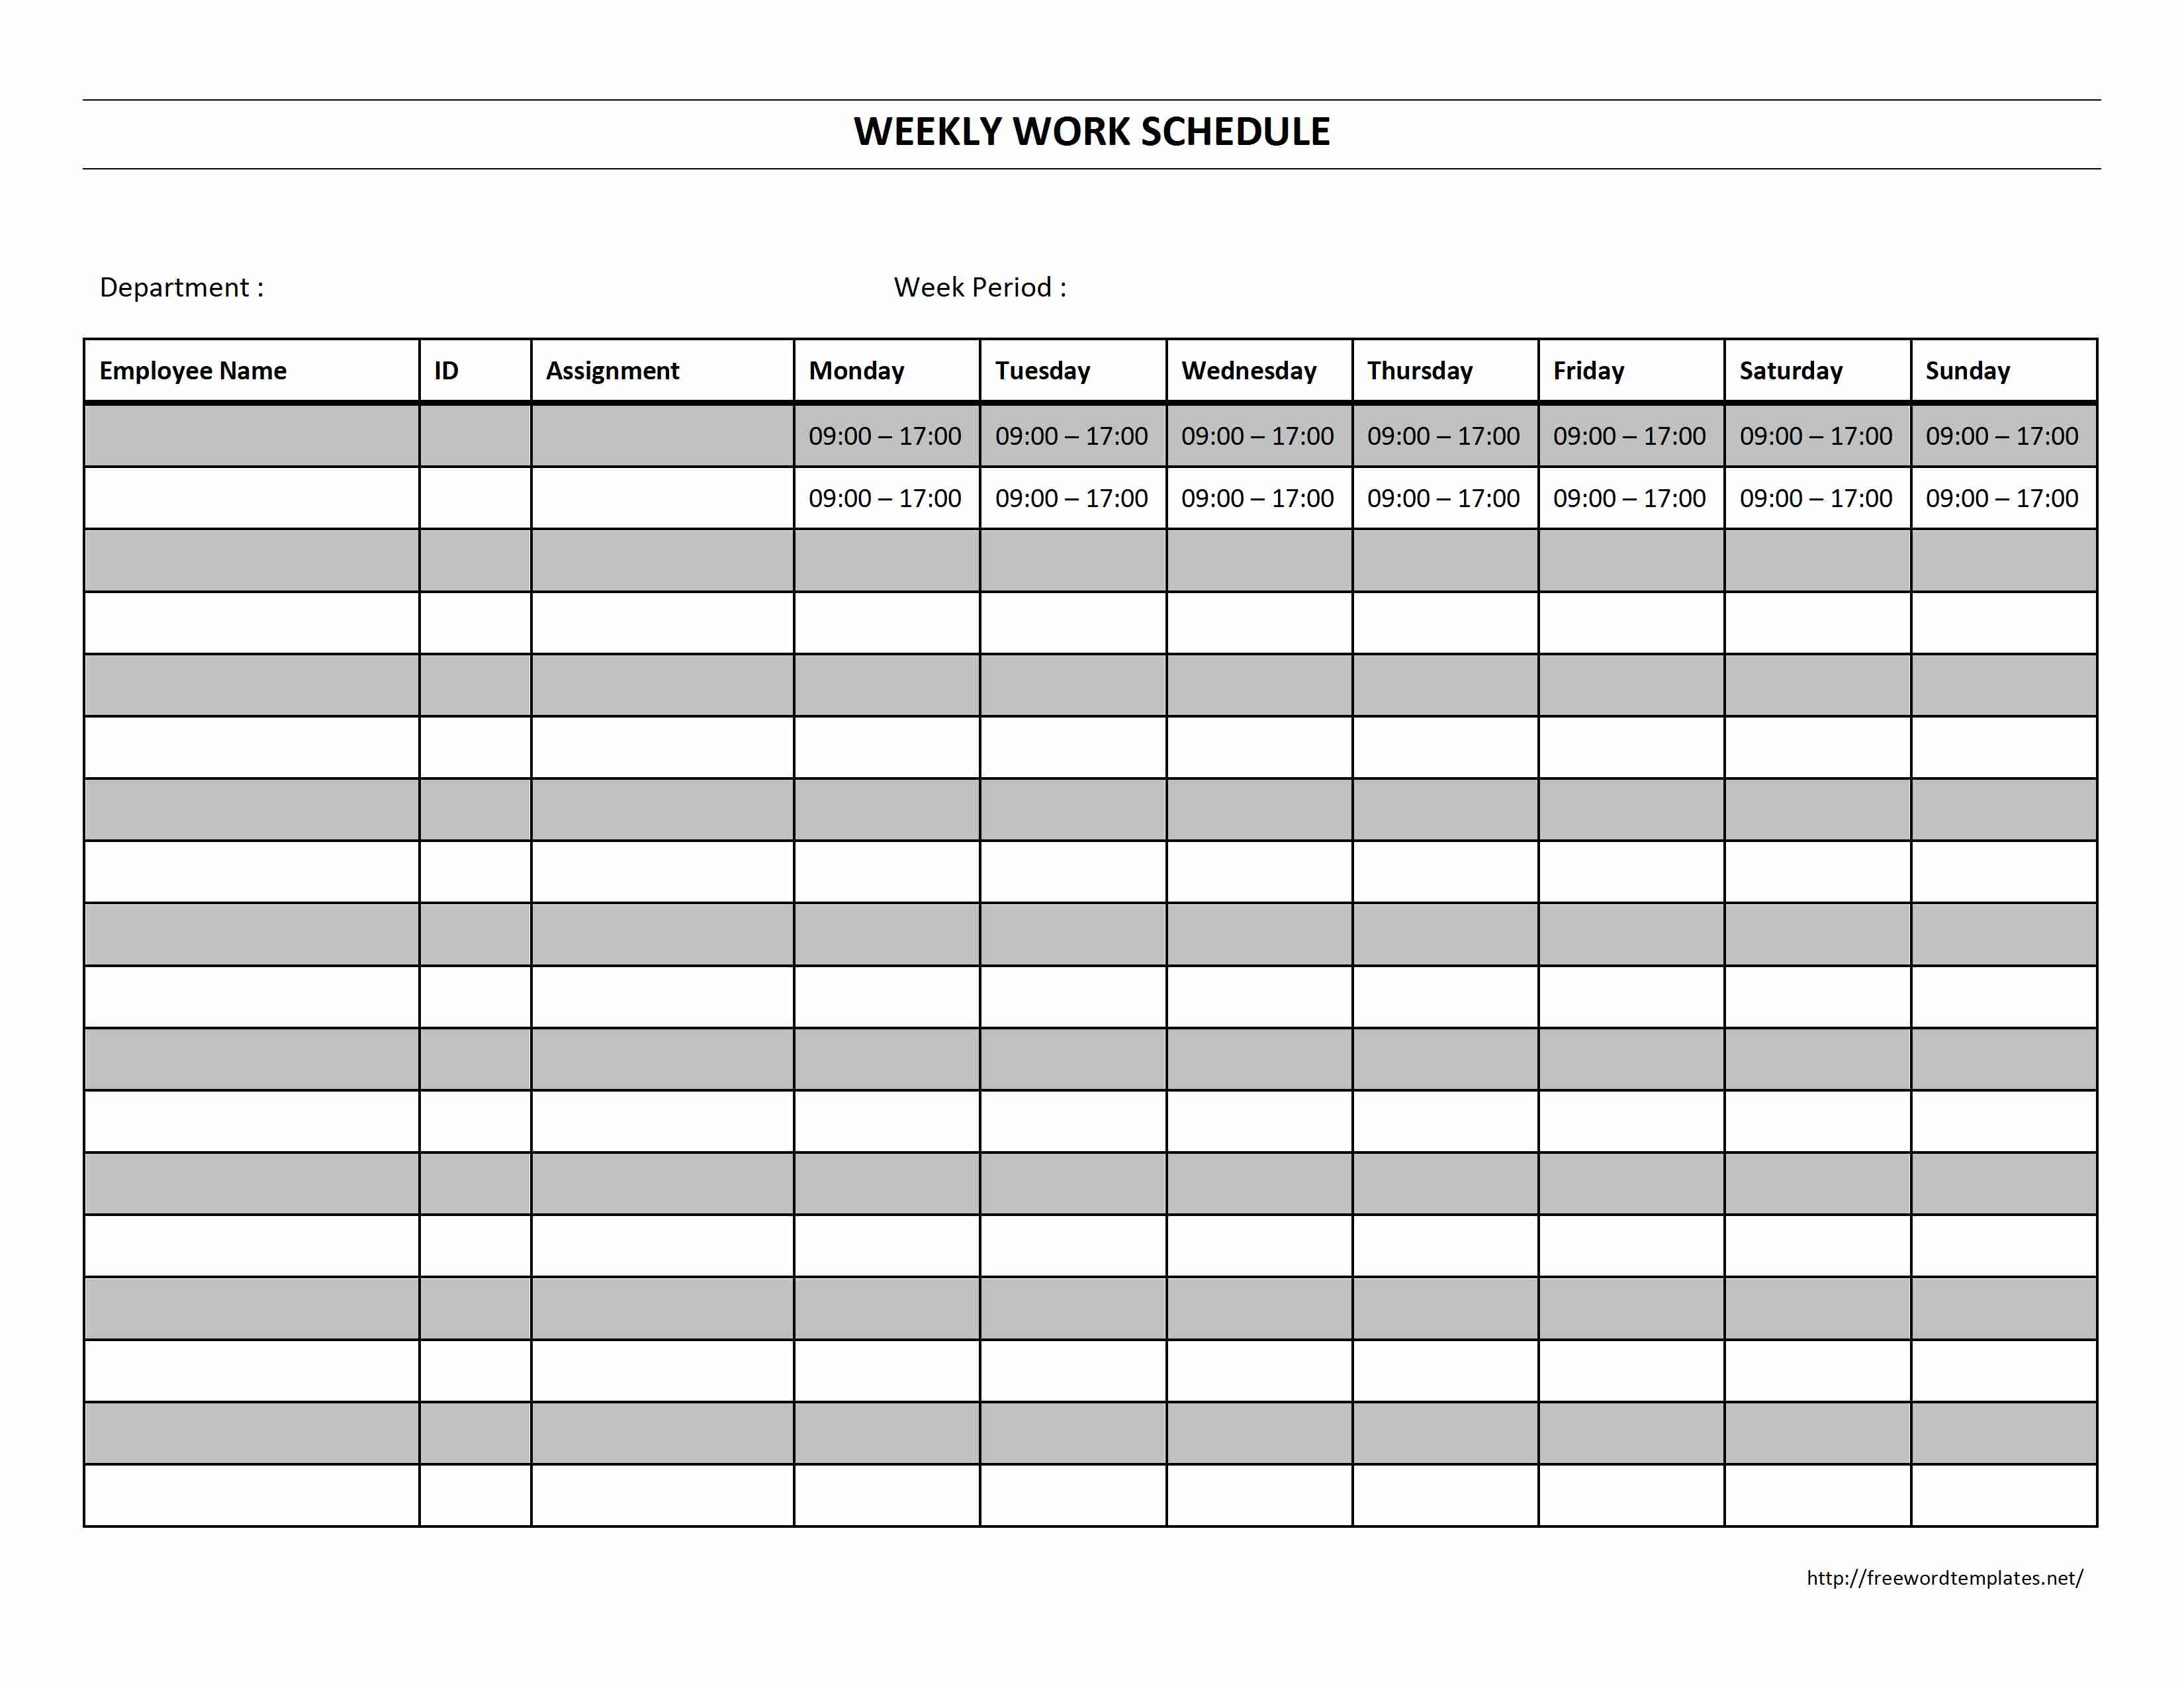 Weekly Work Schedule Template E Printable Employee Sample Plan Excel - Free Printable Weekly Work Schedule